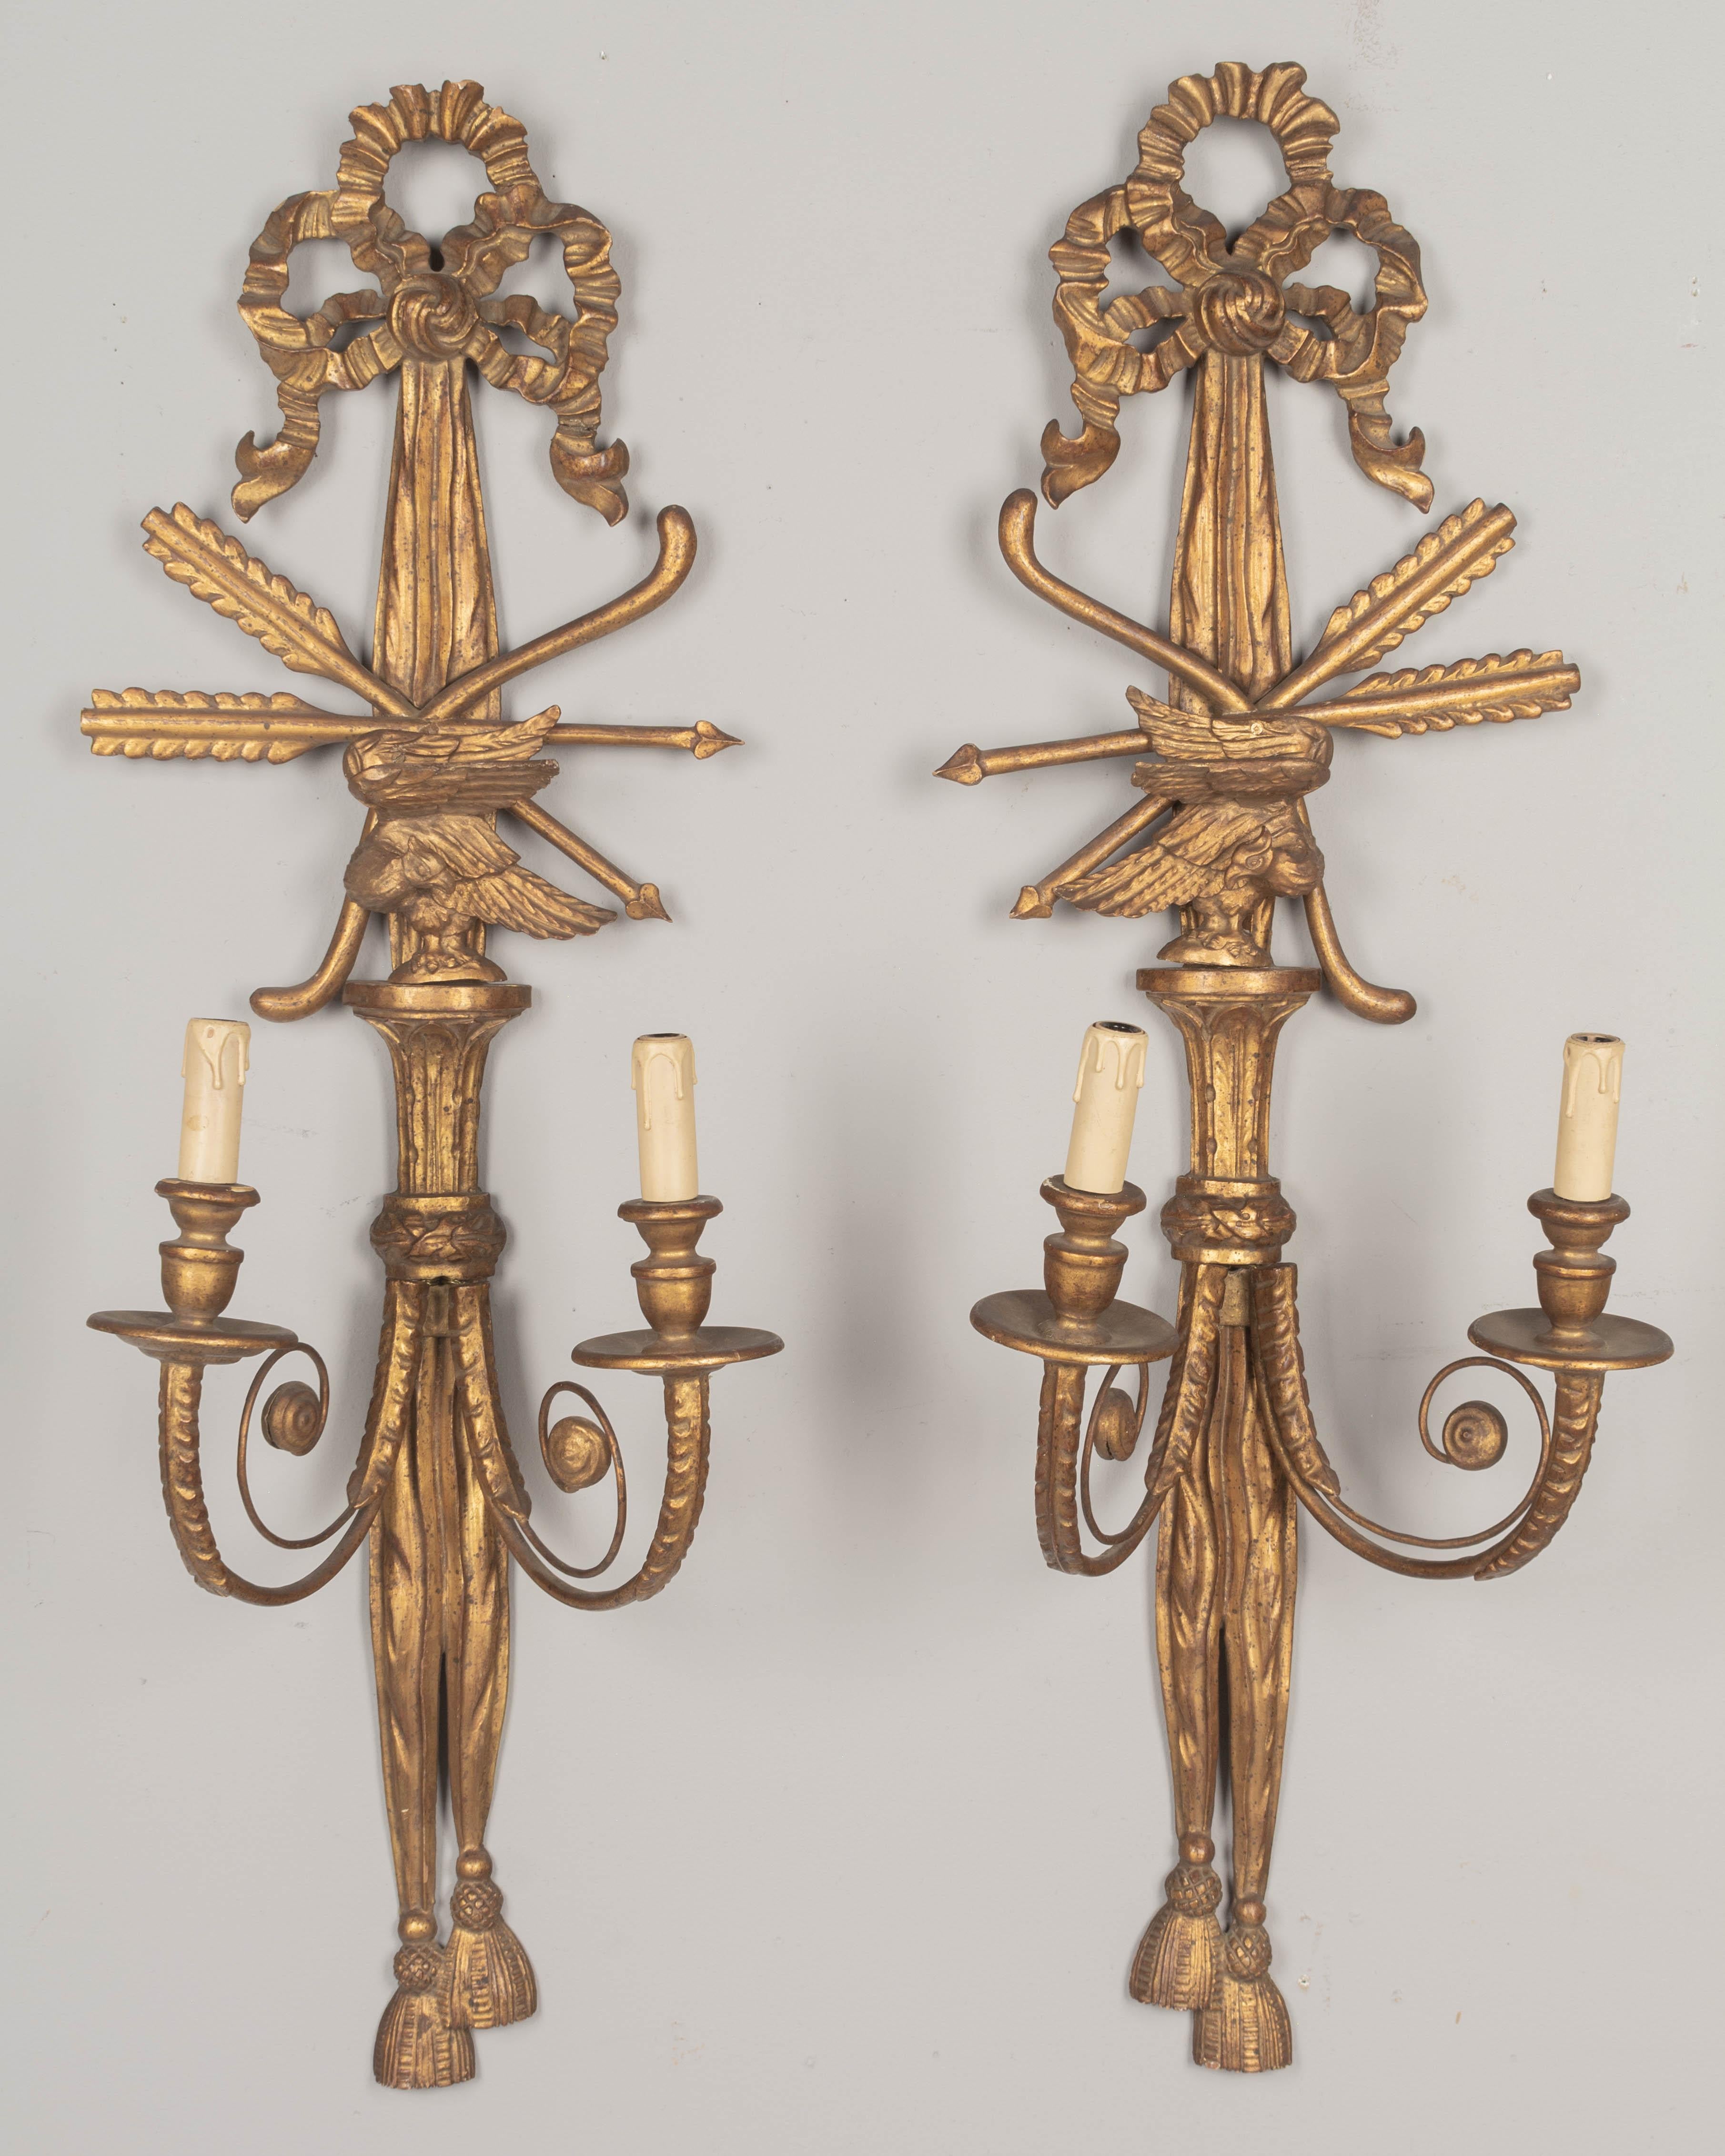 Paire d'appliques italiennes à deux lumières en bois doré, chacune avec des glands et des rubans drapés sculptés, et un oiseau en trois dimensions. En bon état, avec une chaude patine dorée. Deux bras de bougie en métal à enroulement avec détails de